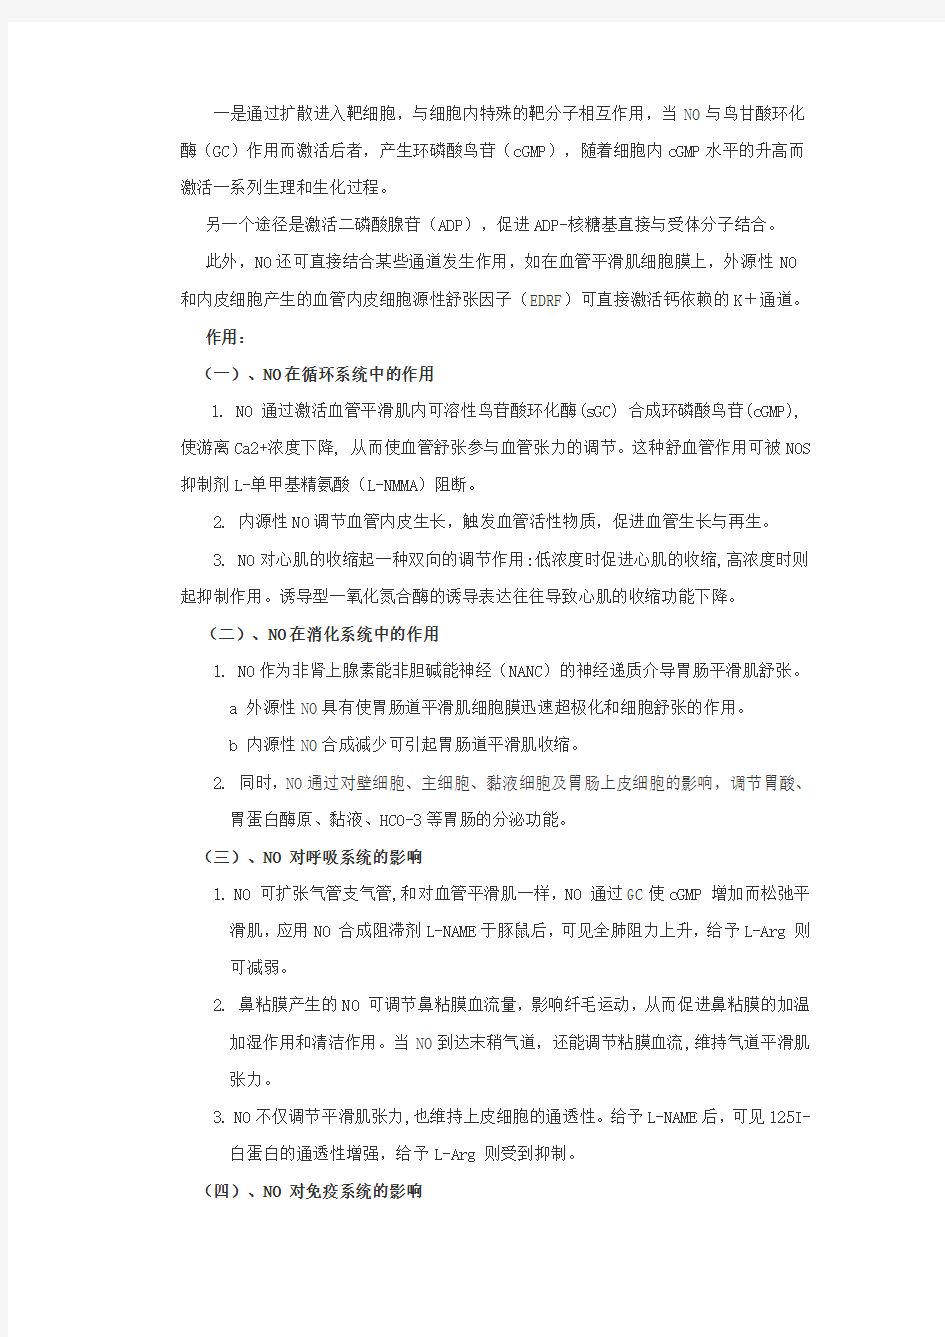 二、一氧化氮(NO) - 陕西师范大学网络教育学院首页